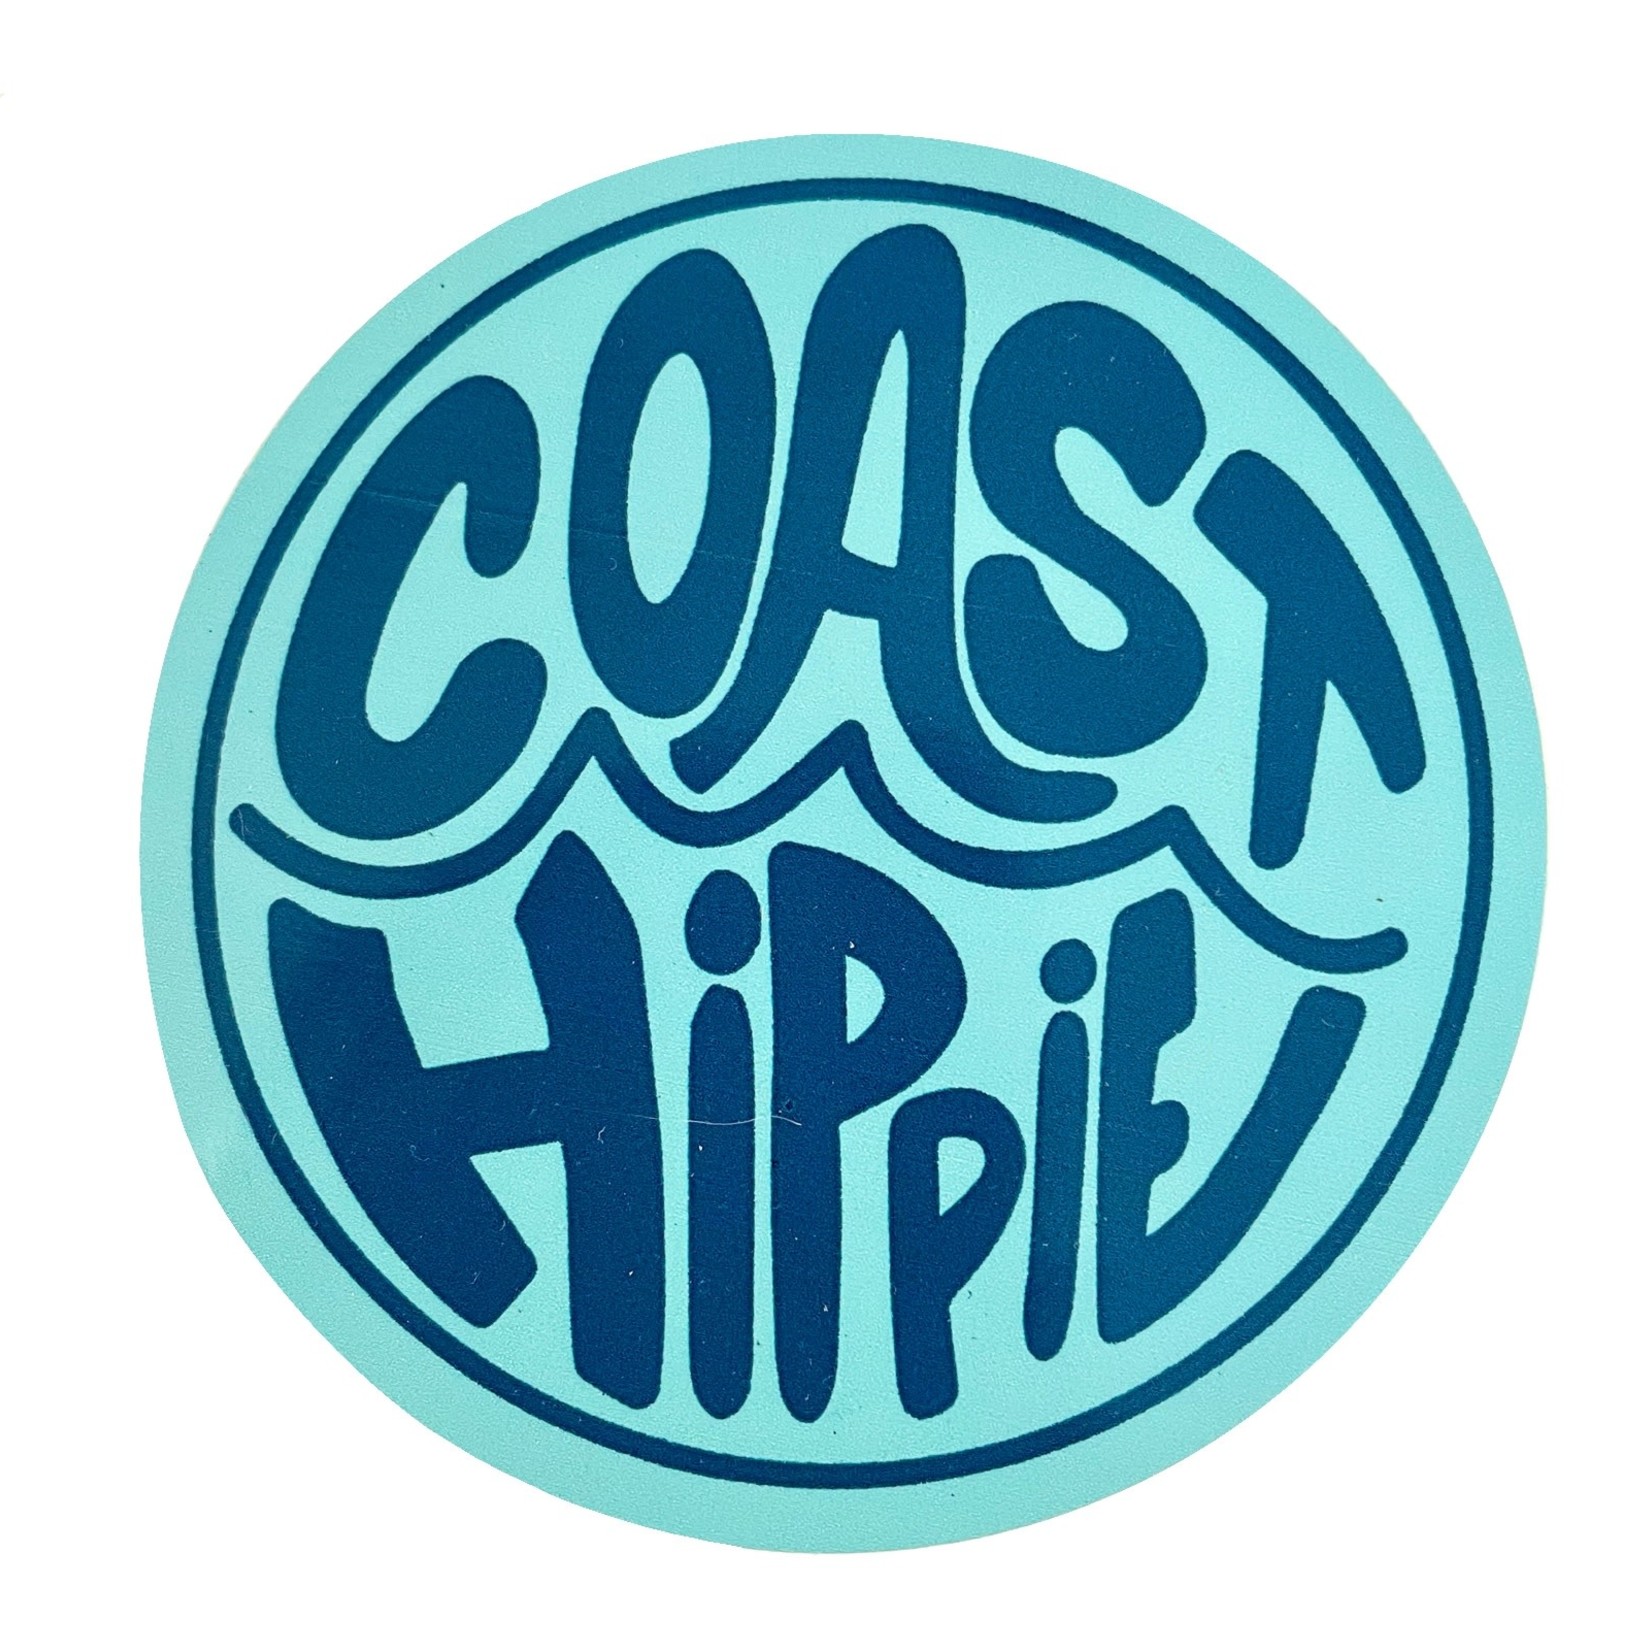 Coast Hippie Sticker - Groovy